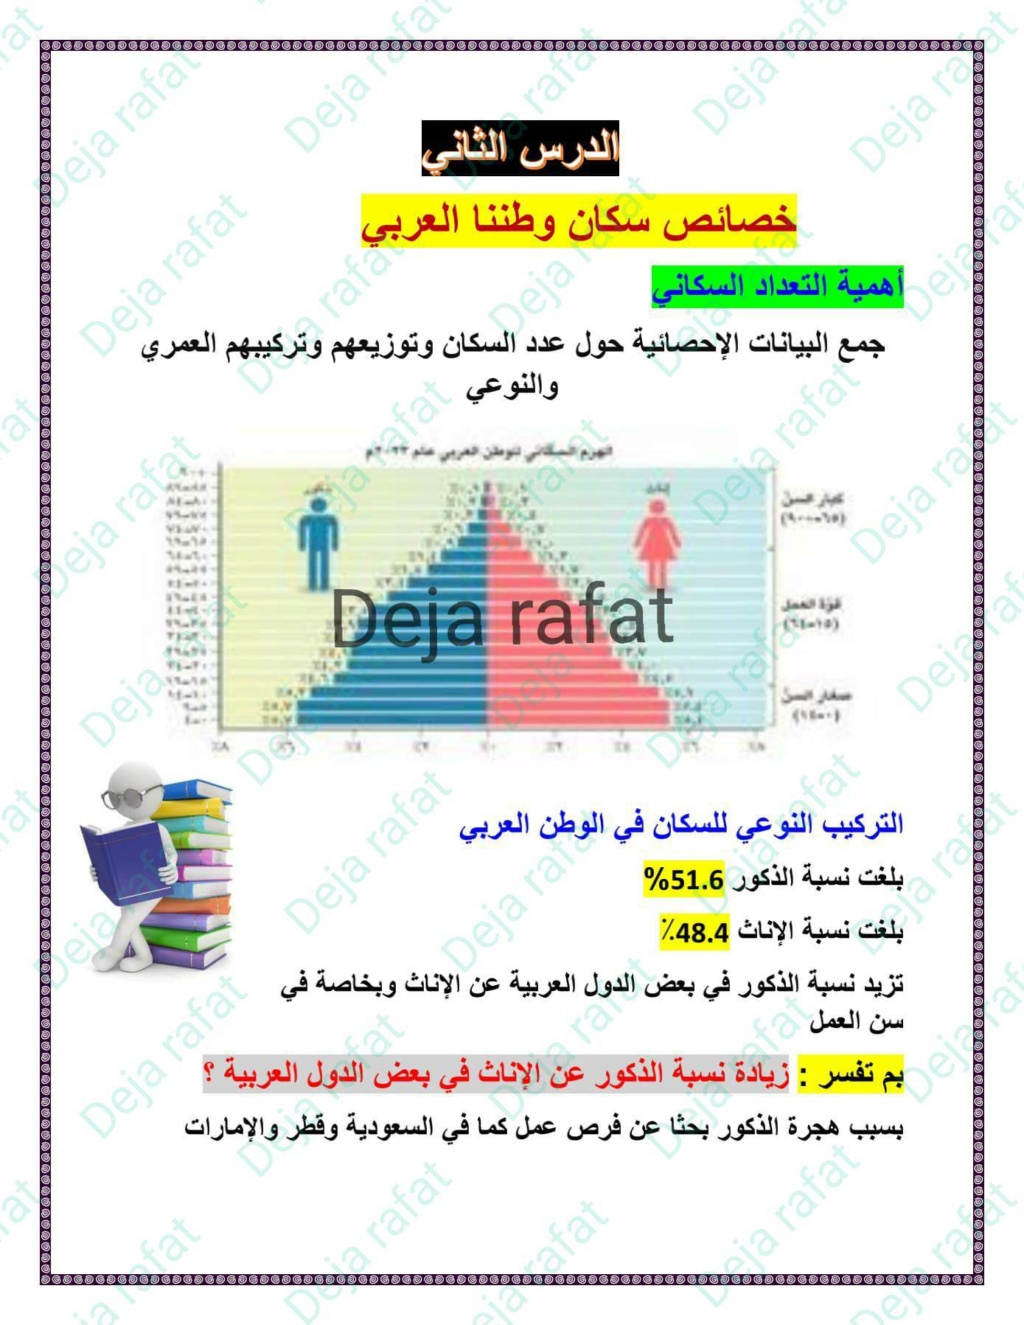 خصائص سكان وطننا العربي دراسات الصف السادس أ. ديجا رافت 4546